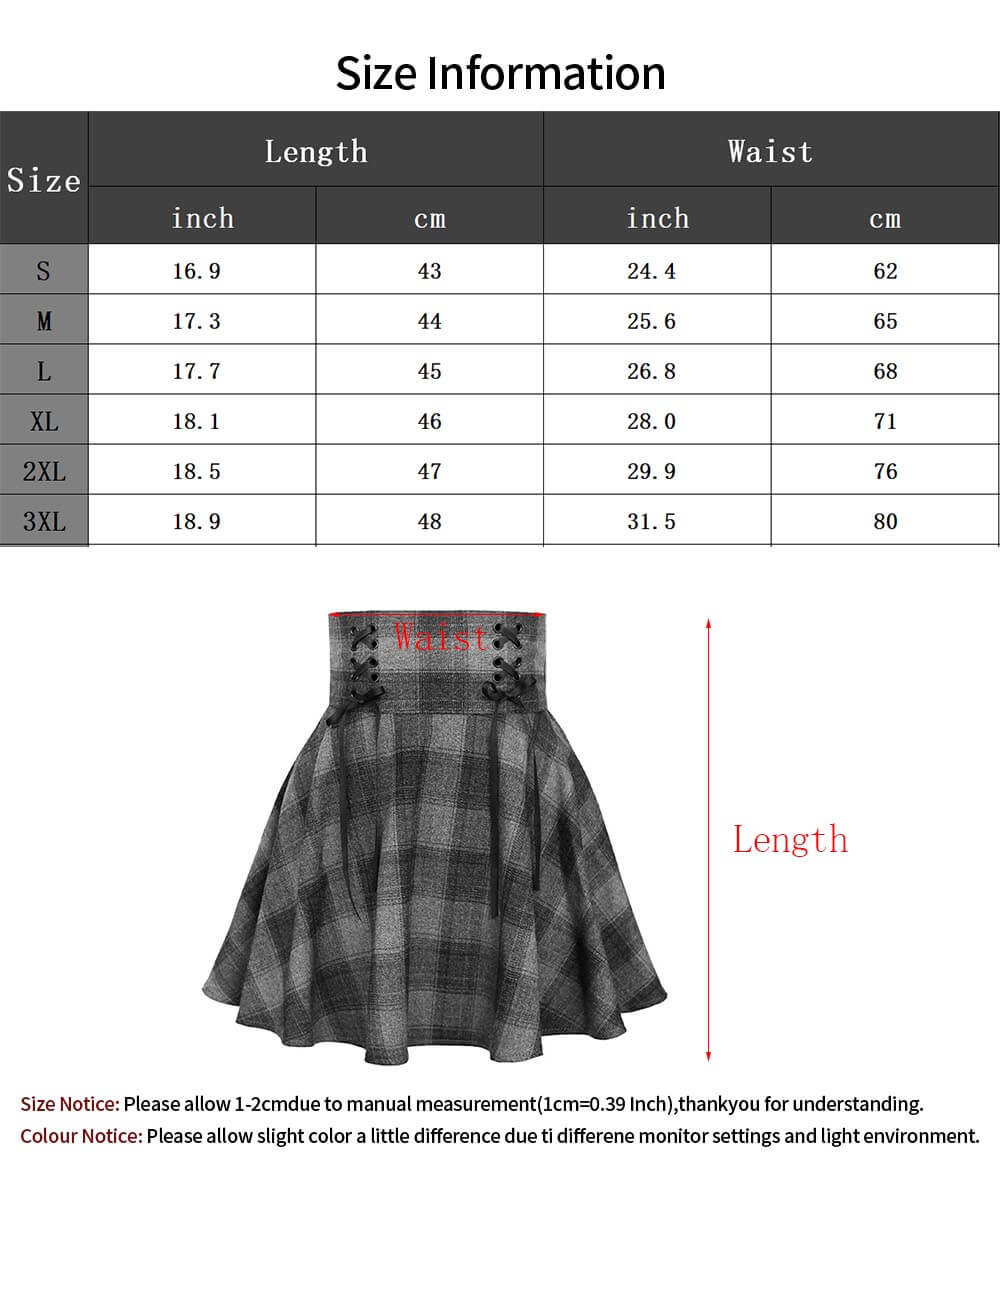  Women's Elegant Plaid Pleated Skirt Versatile Stretchy A-line School Skirt Uniform Mini Skater Skirt